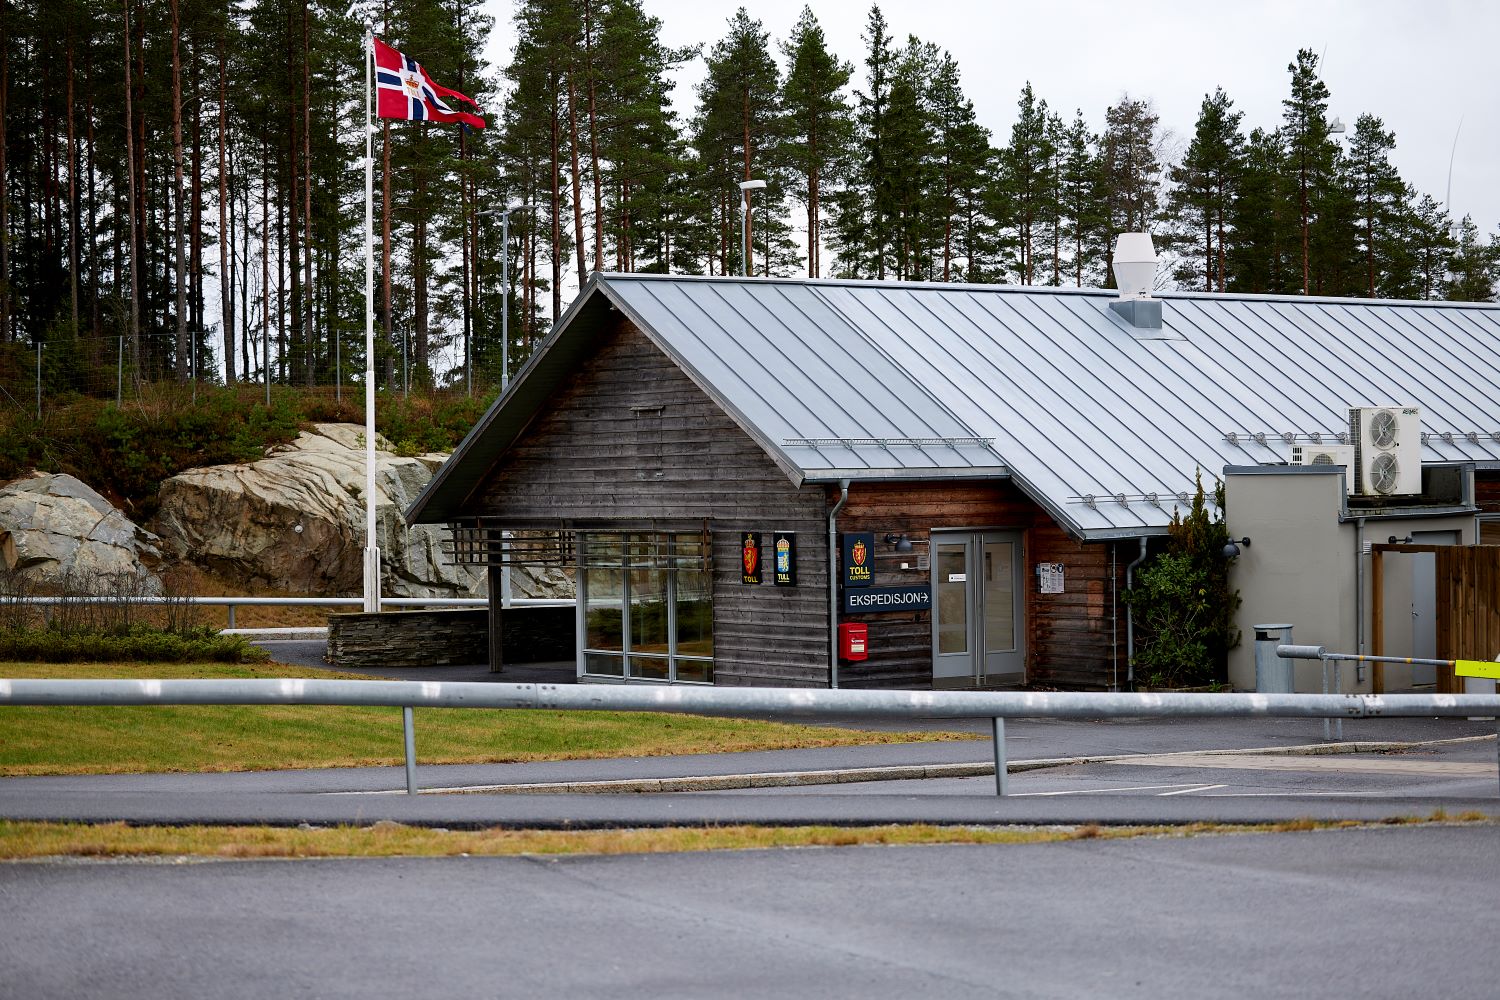 Foto av et tollsted. Tollstedet er bygget i tre, og har etatsemblem til både svensk og norsk toll ved inngangsdøren. Utenfor tollstedet flagges det med norsk vimpel.